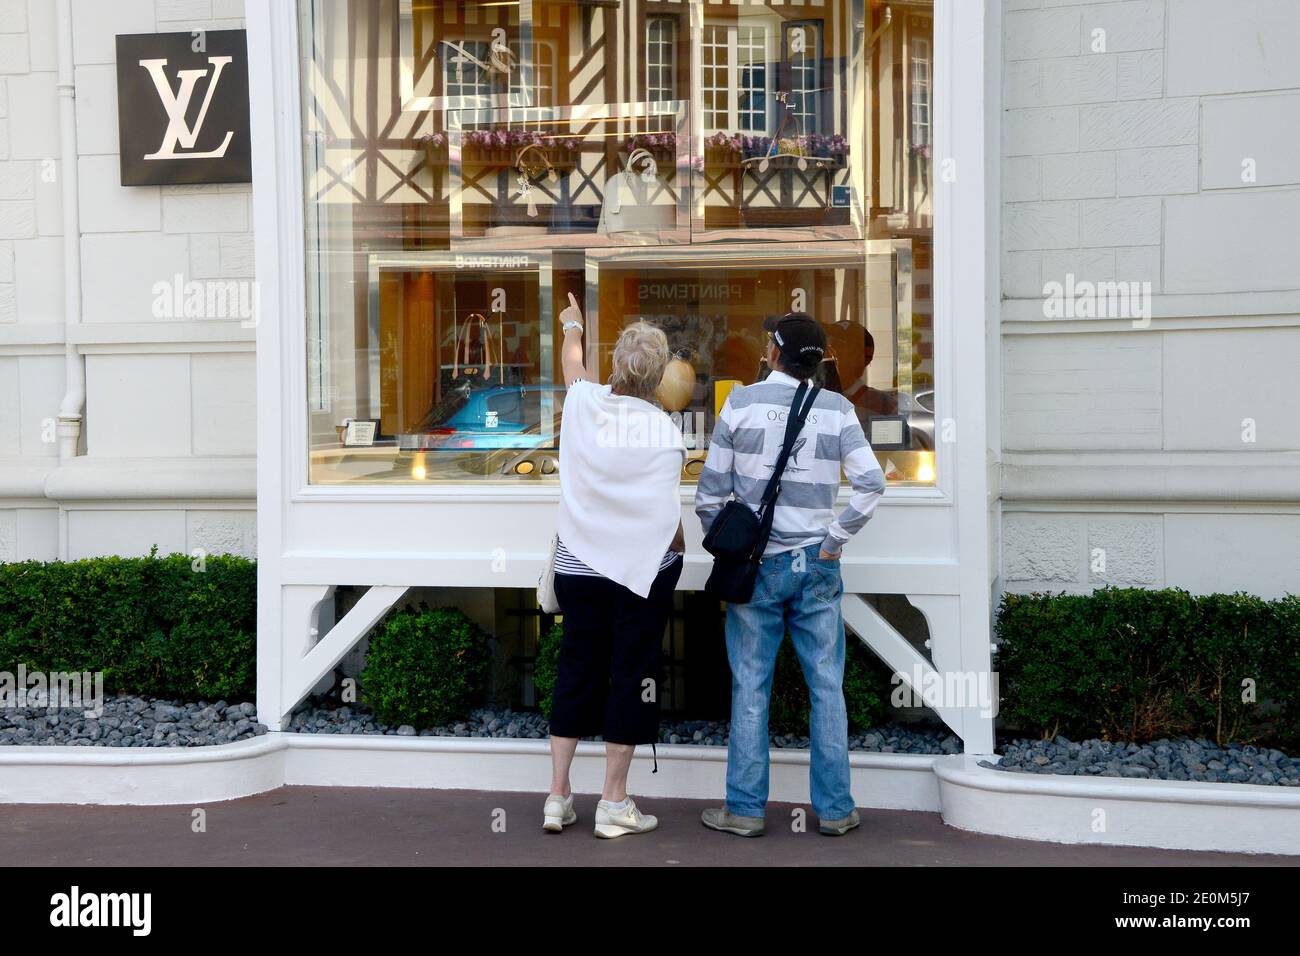 The Deauville Villa Vuitton Store Opening